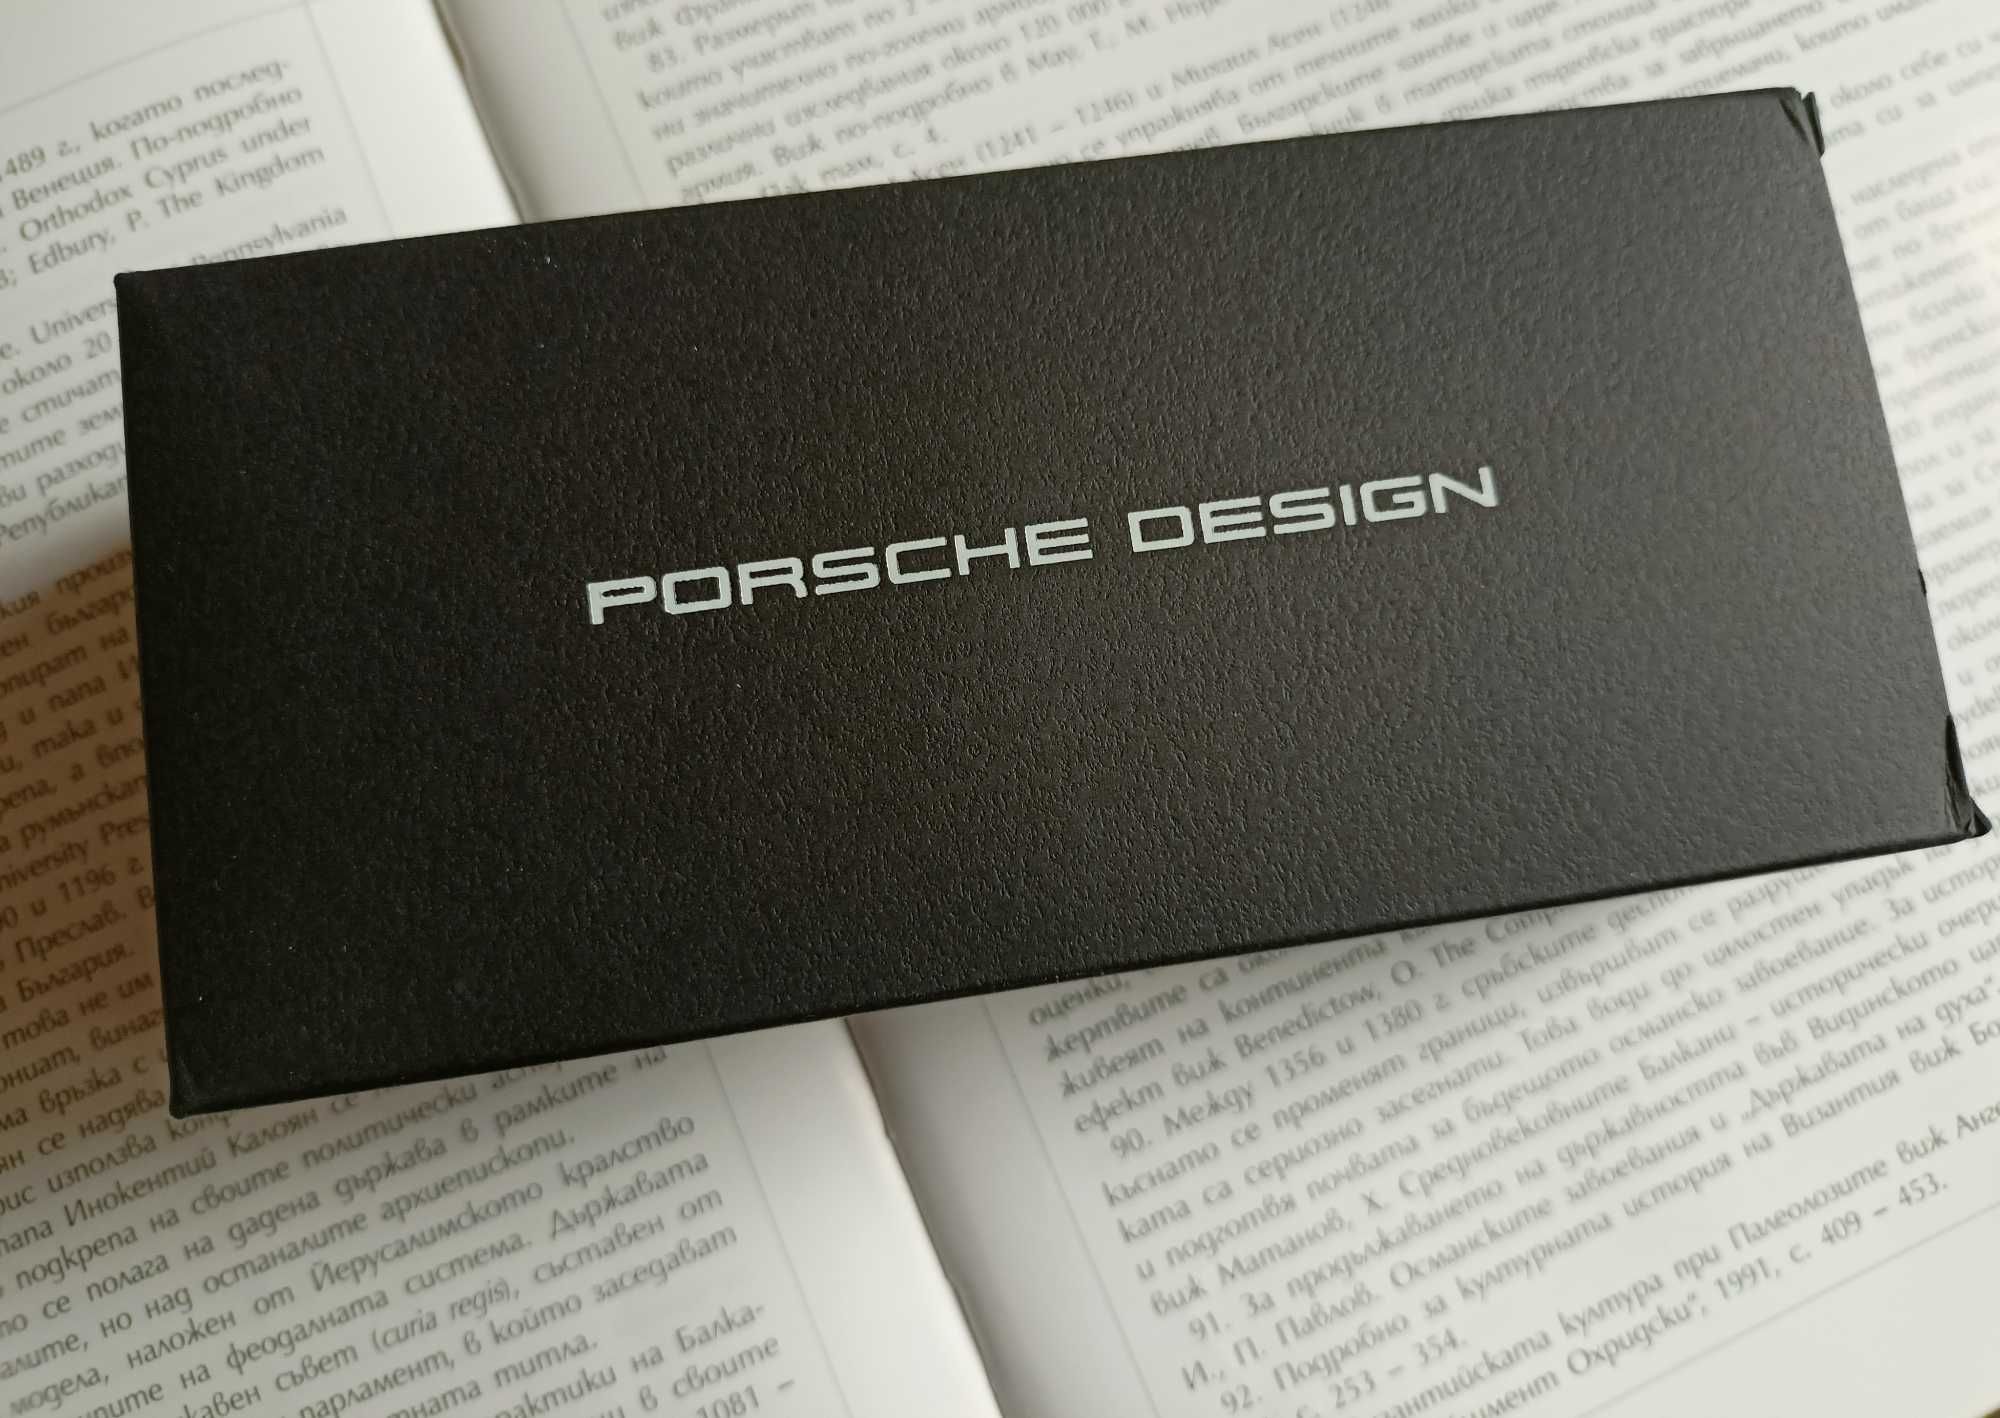 Нови слънчеви очила Porsche Design, огледални, олекотени, авиатор стил